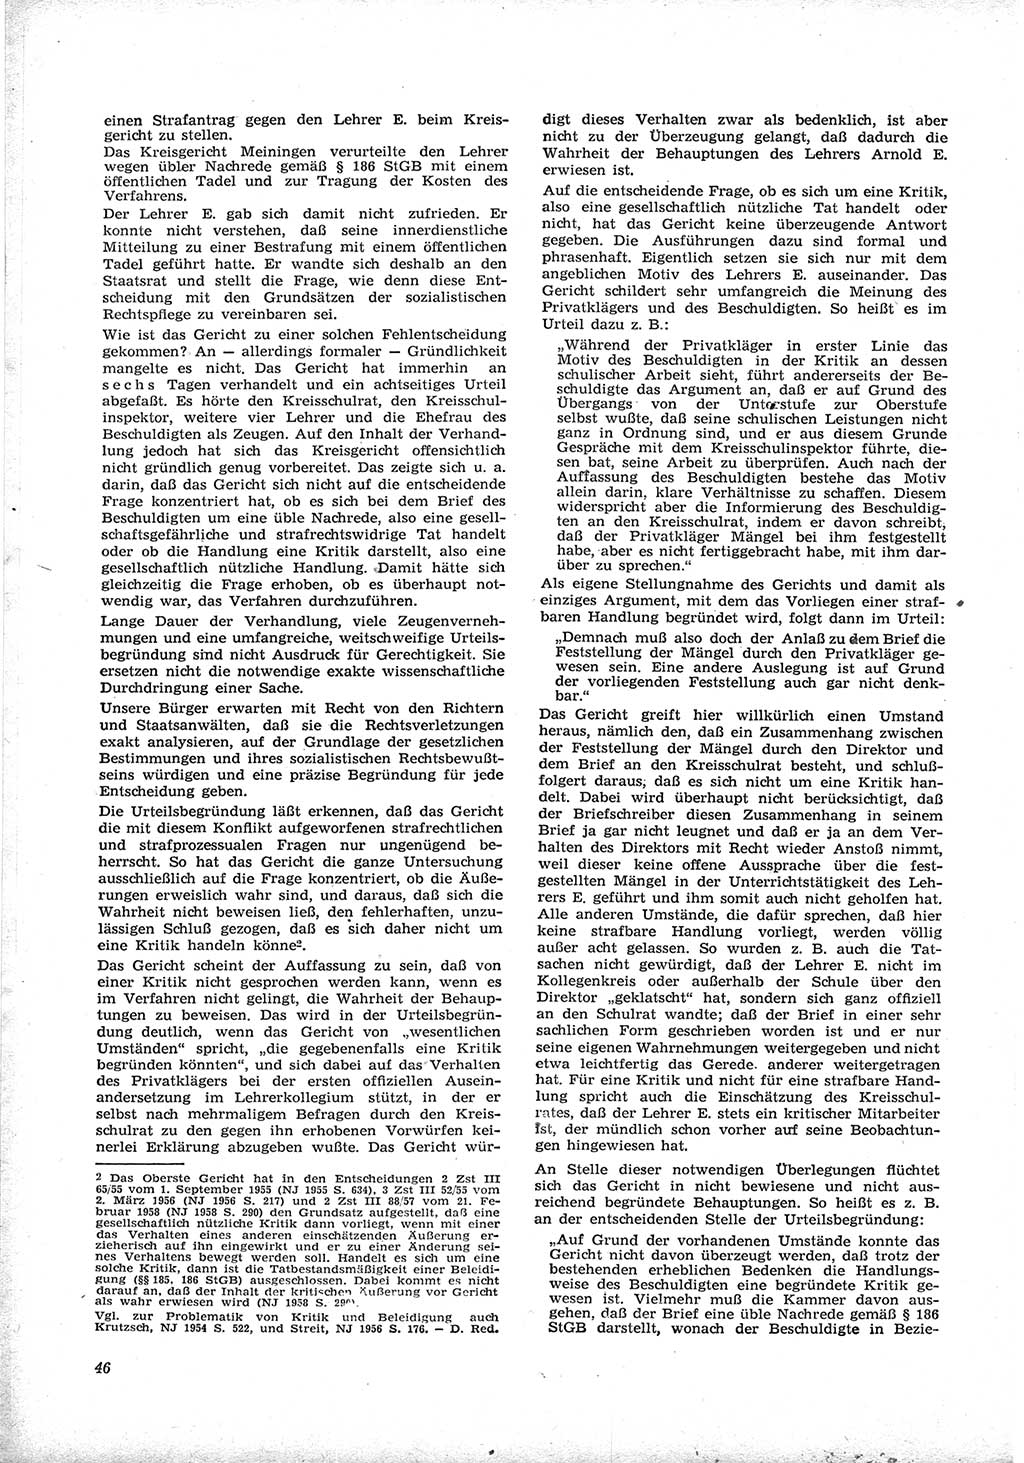 Neue Justiz (NJ), Zeitschrift für Recht und Rechtswissenschaft [Deutsche Demokratische Republik (DDR)], 17. Jahrgang 1963, Seite 46 (NJ DDR 1963, S. 46)